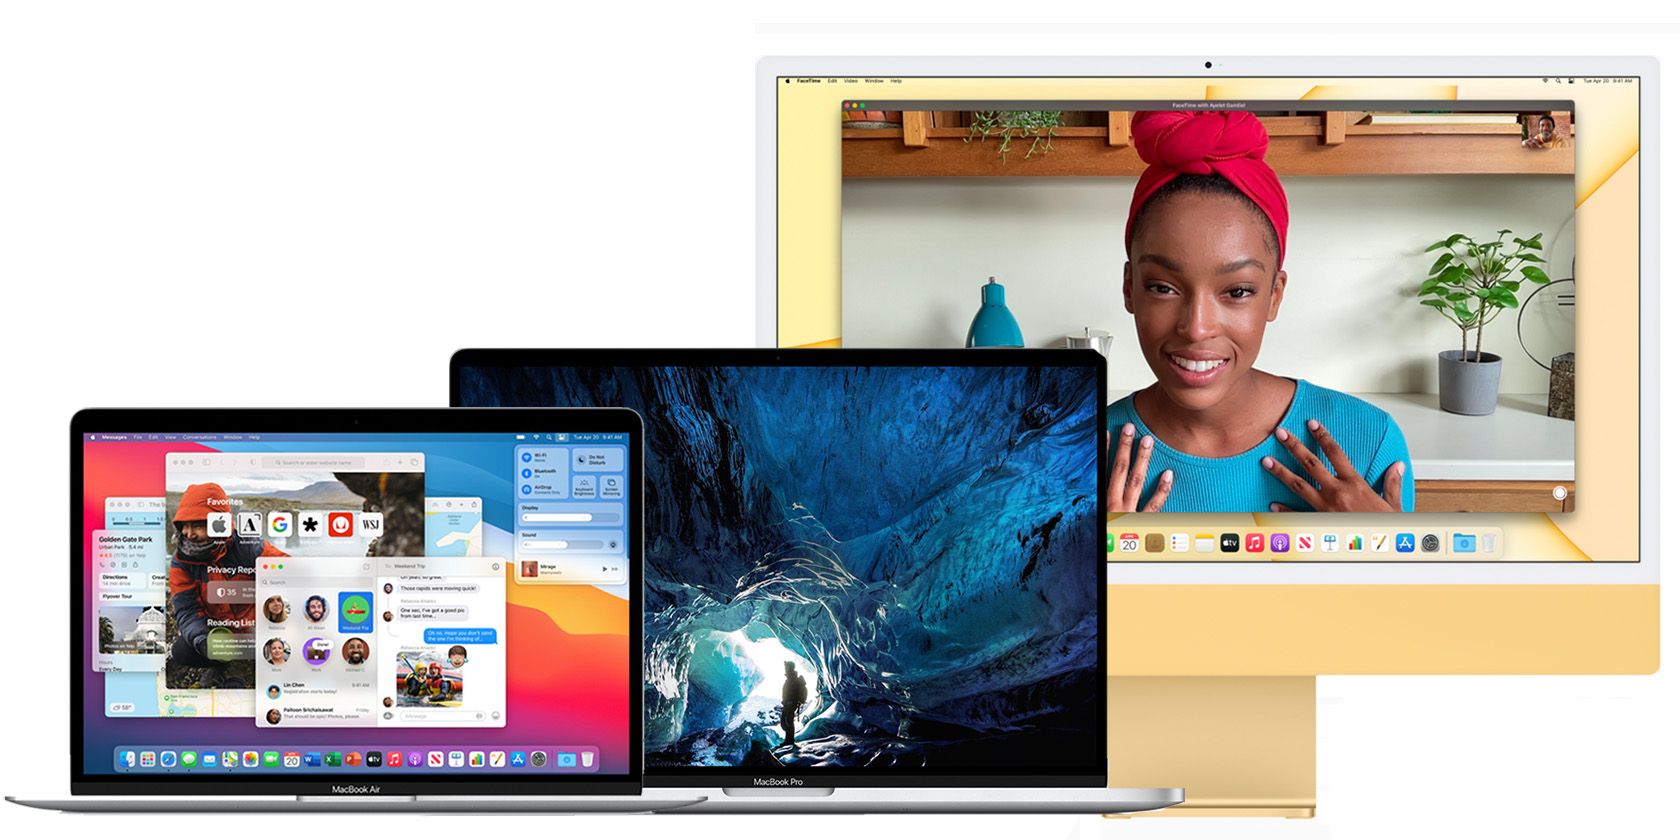 MacBook Air, MacBook Pro, and iMac lineup